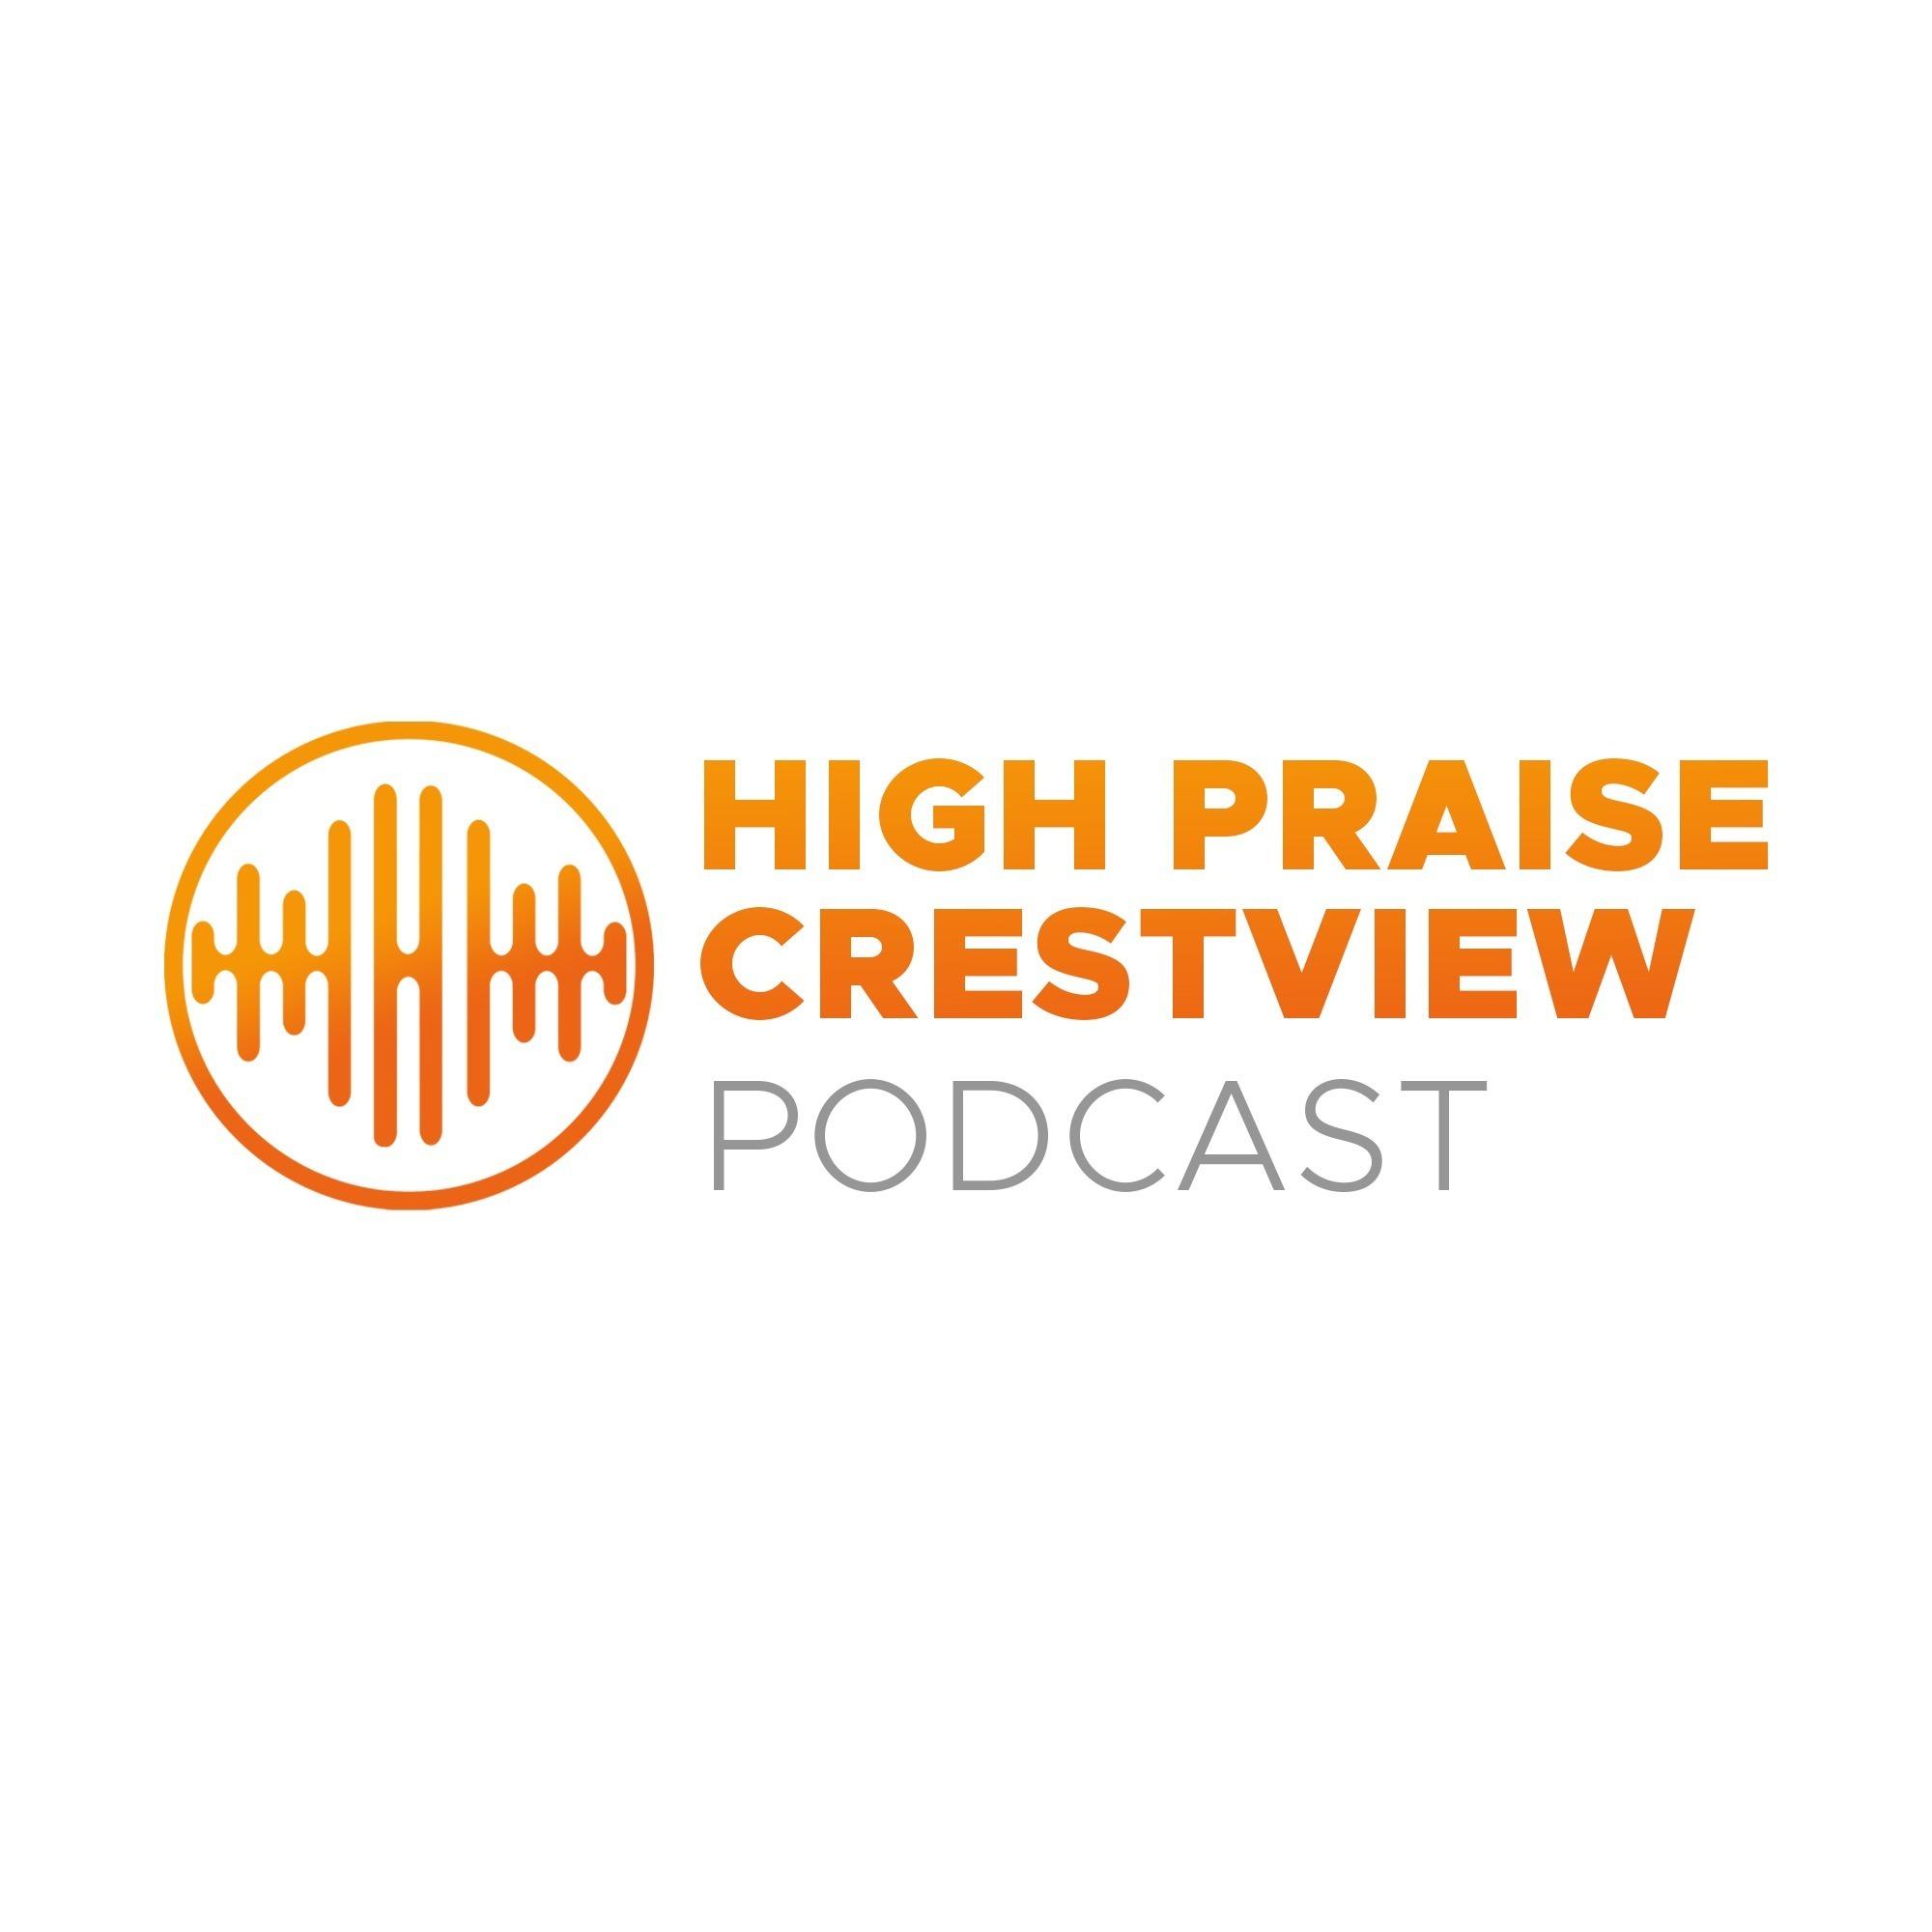 High Praise Crestview